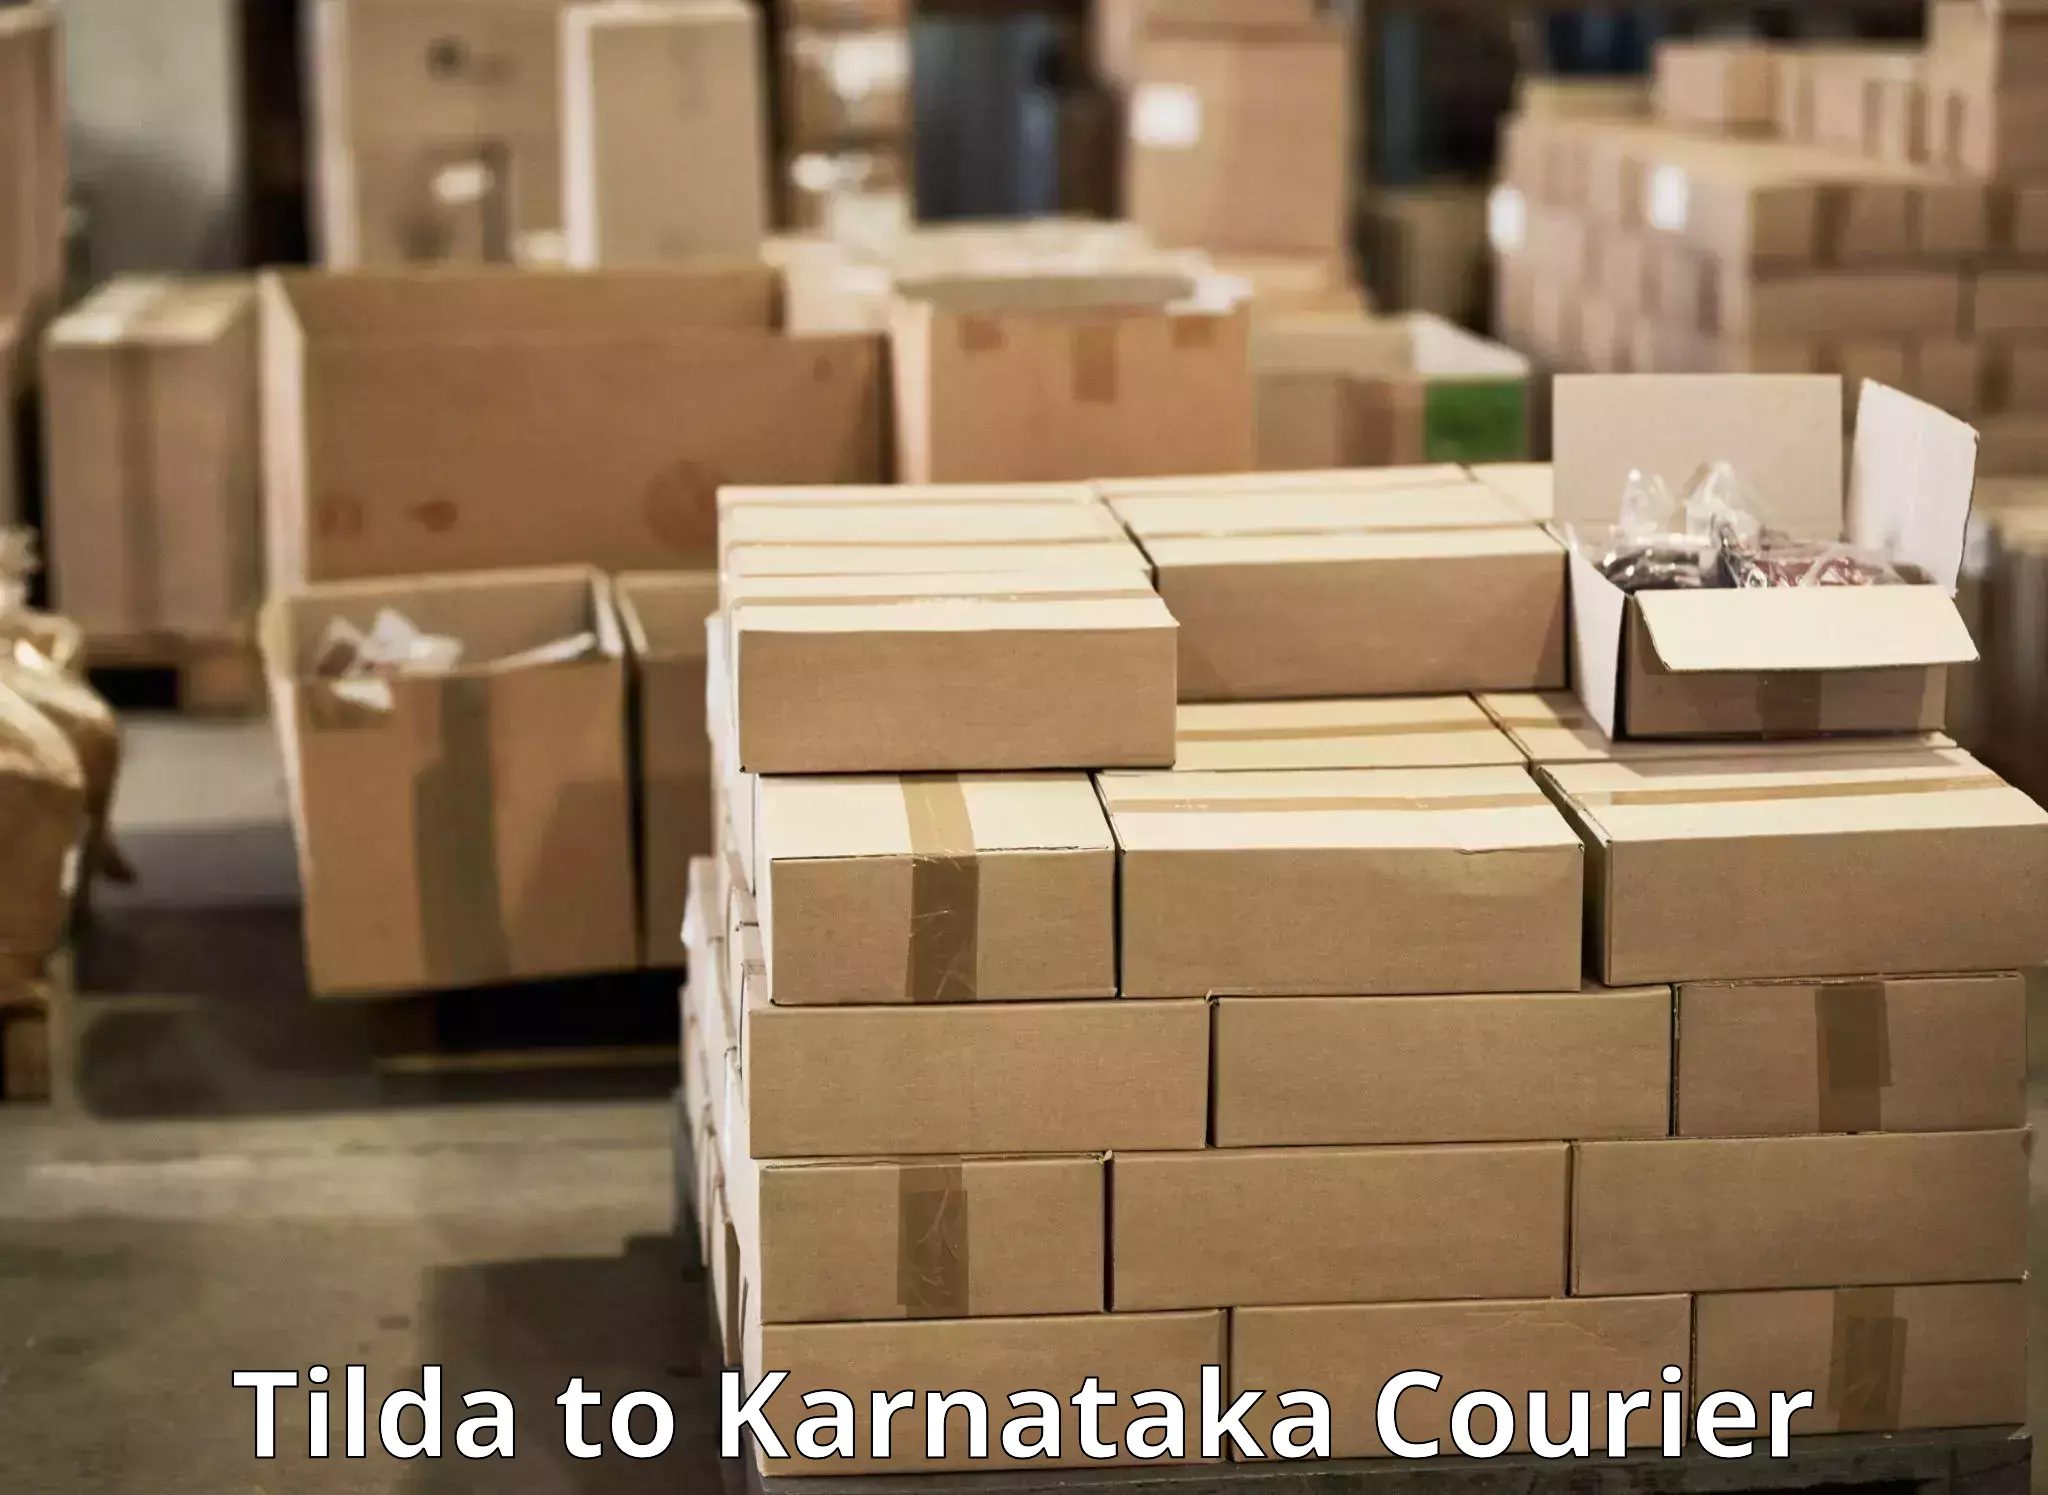 Express delivery network Tilda to Sringeri